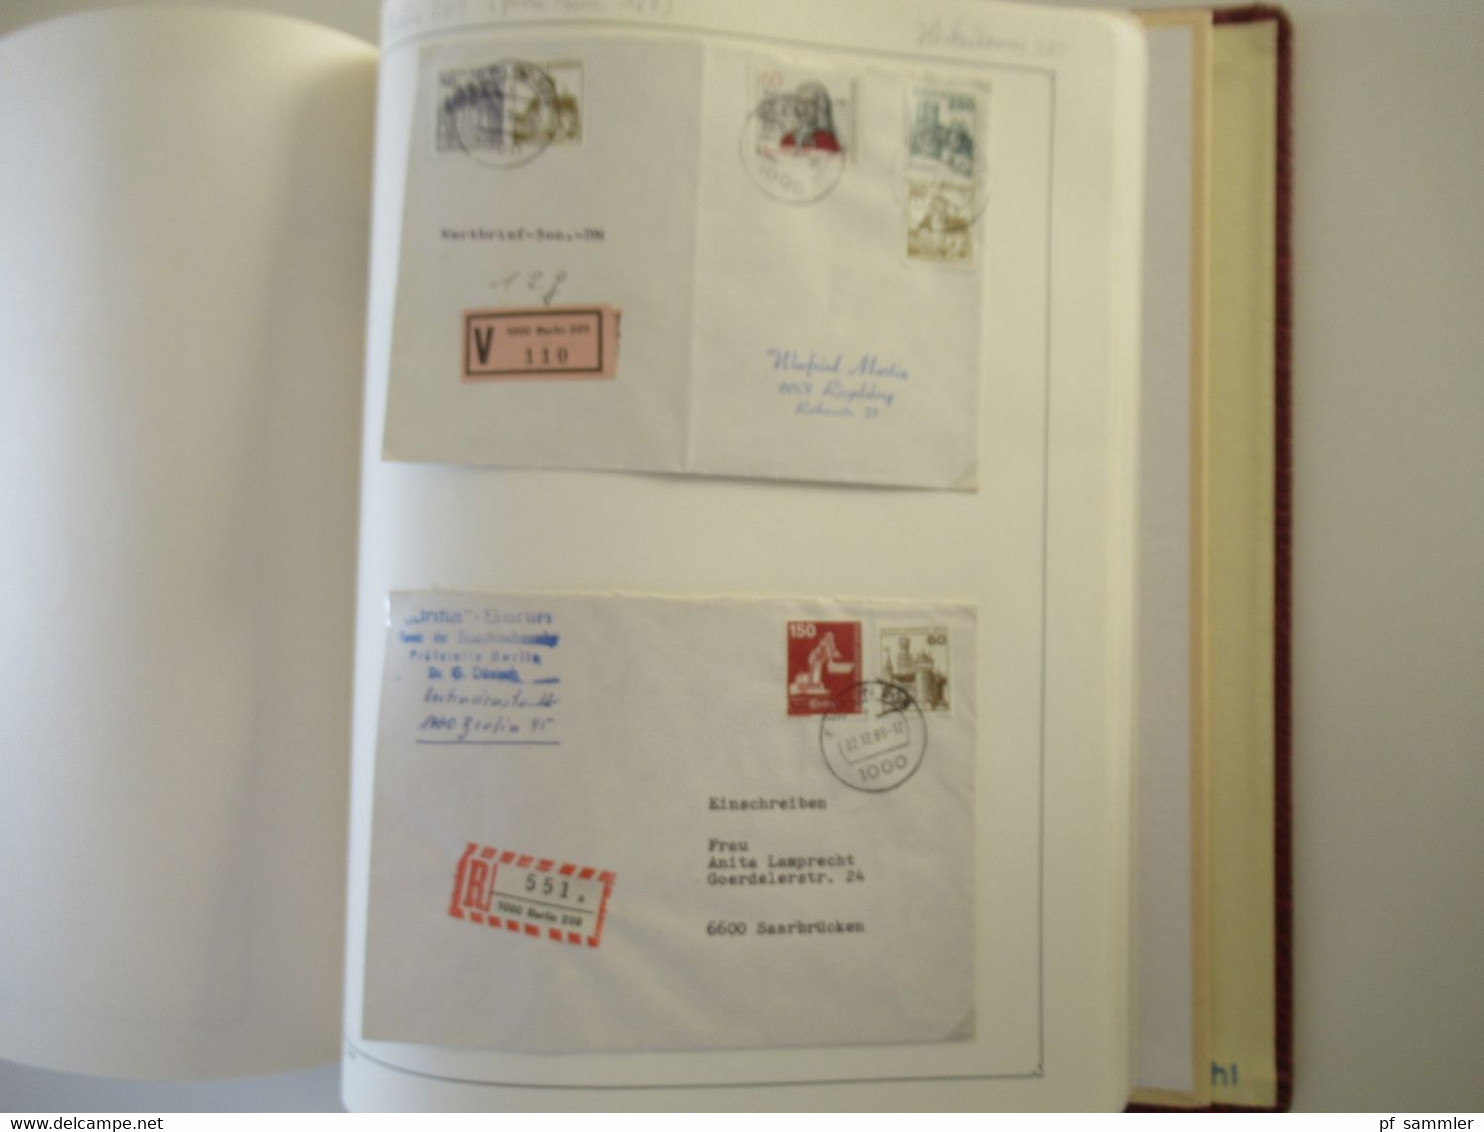 Spezial Slg. Berliner Postämter ab 1962 mit etlichen Briefstücken und auch Belegen! Interessanter Stöberposten!!